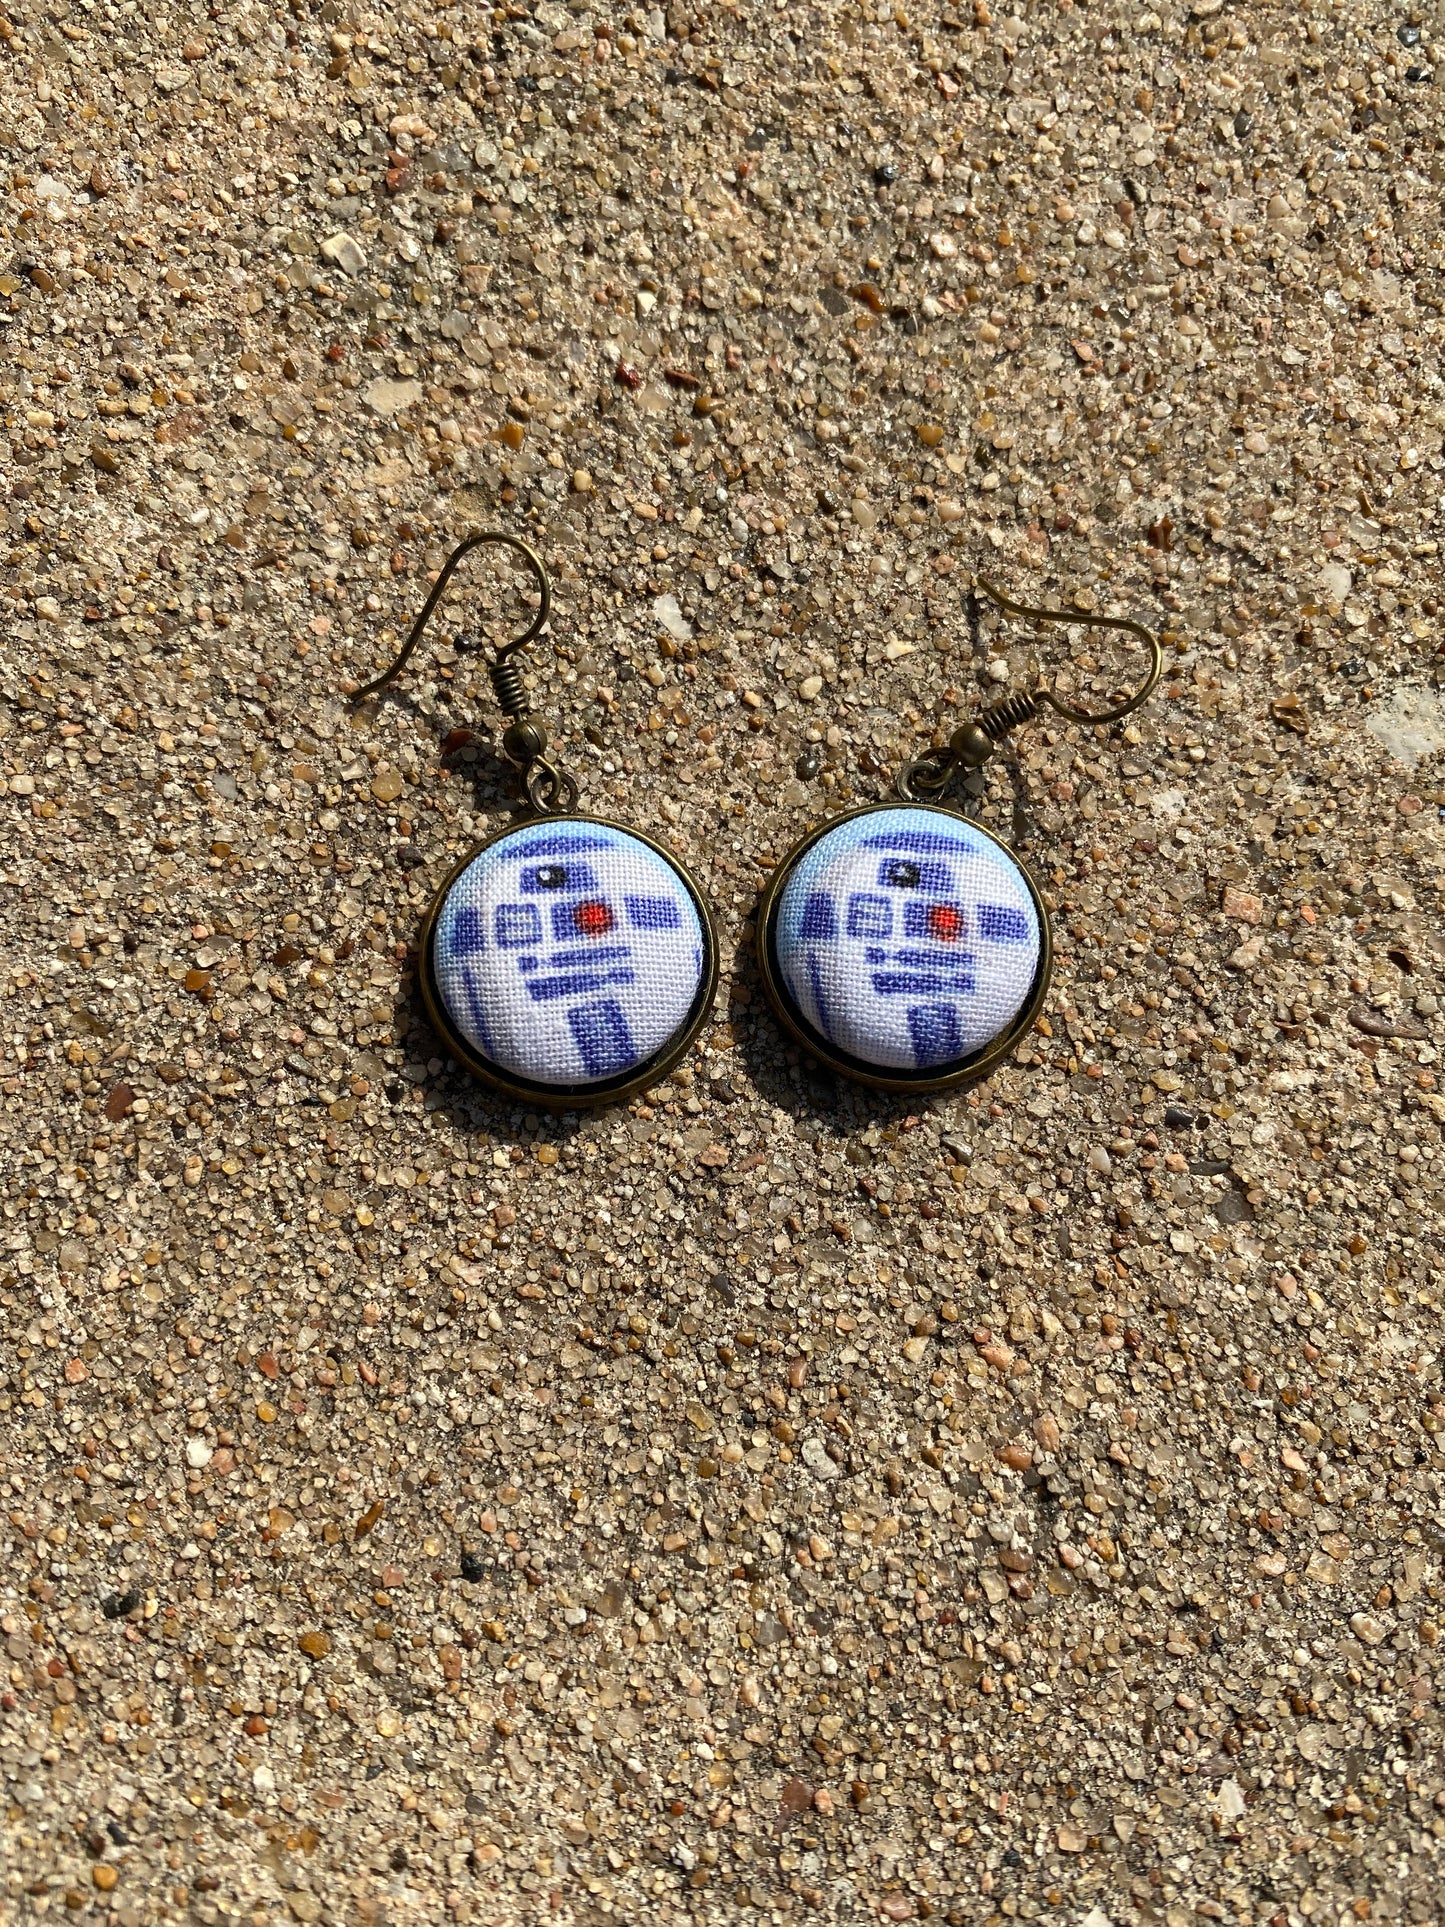 R2-D2 Star Wars Dangle Earring Jewelry 